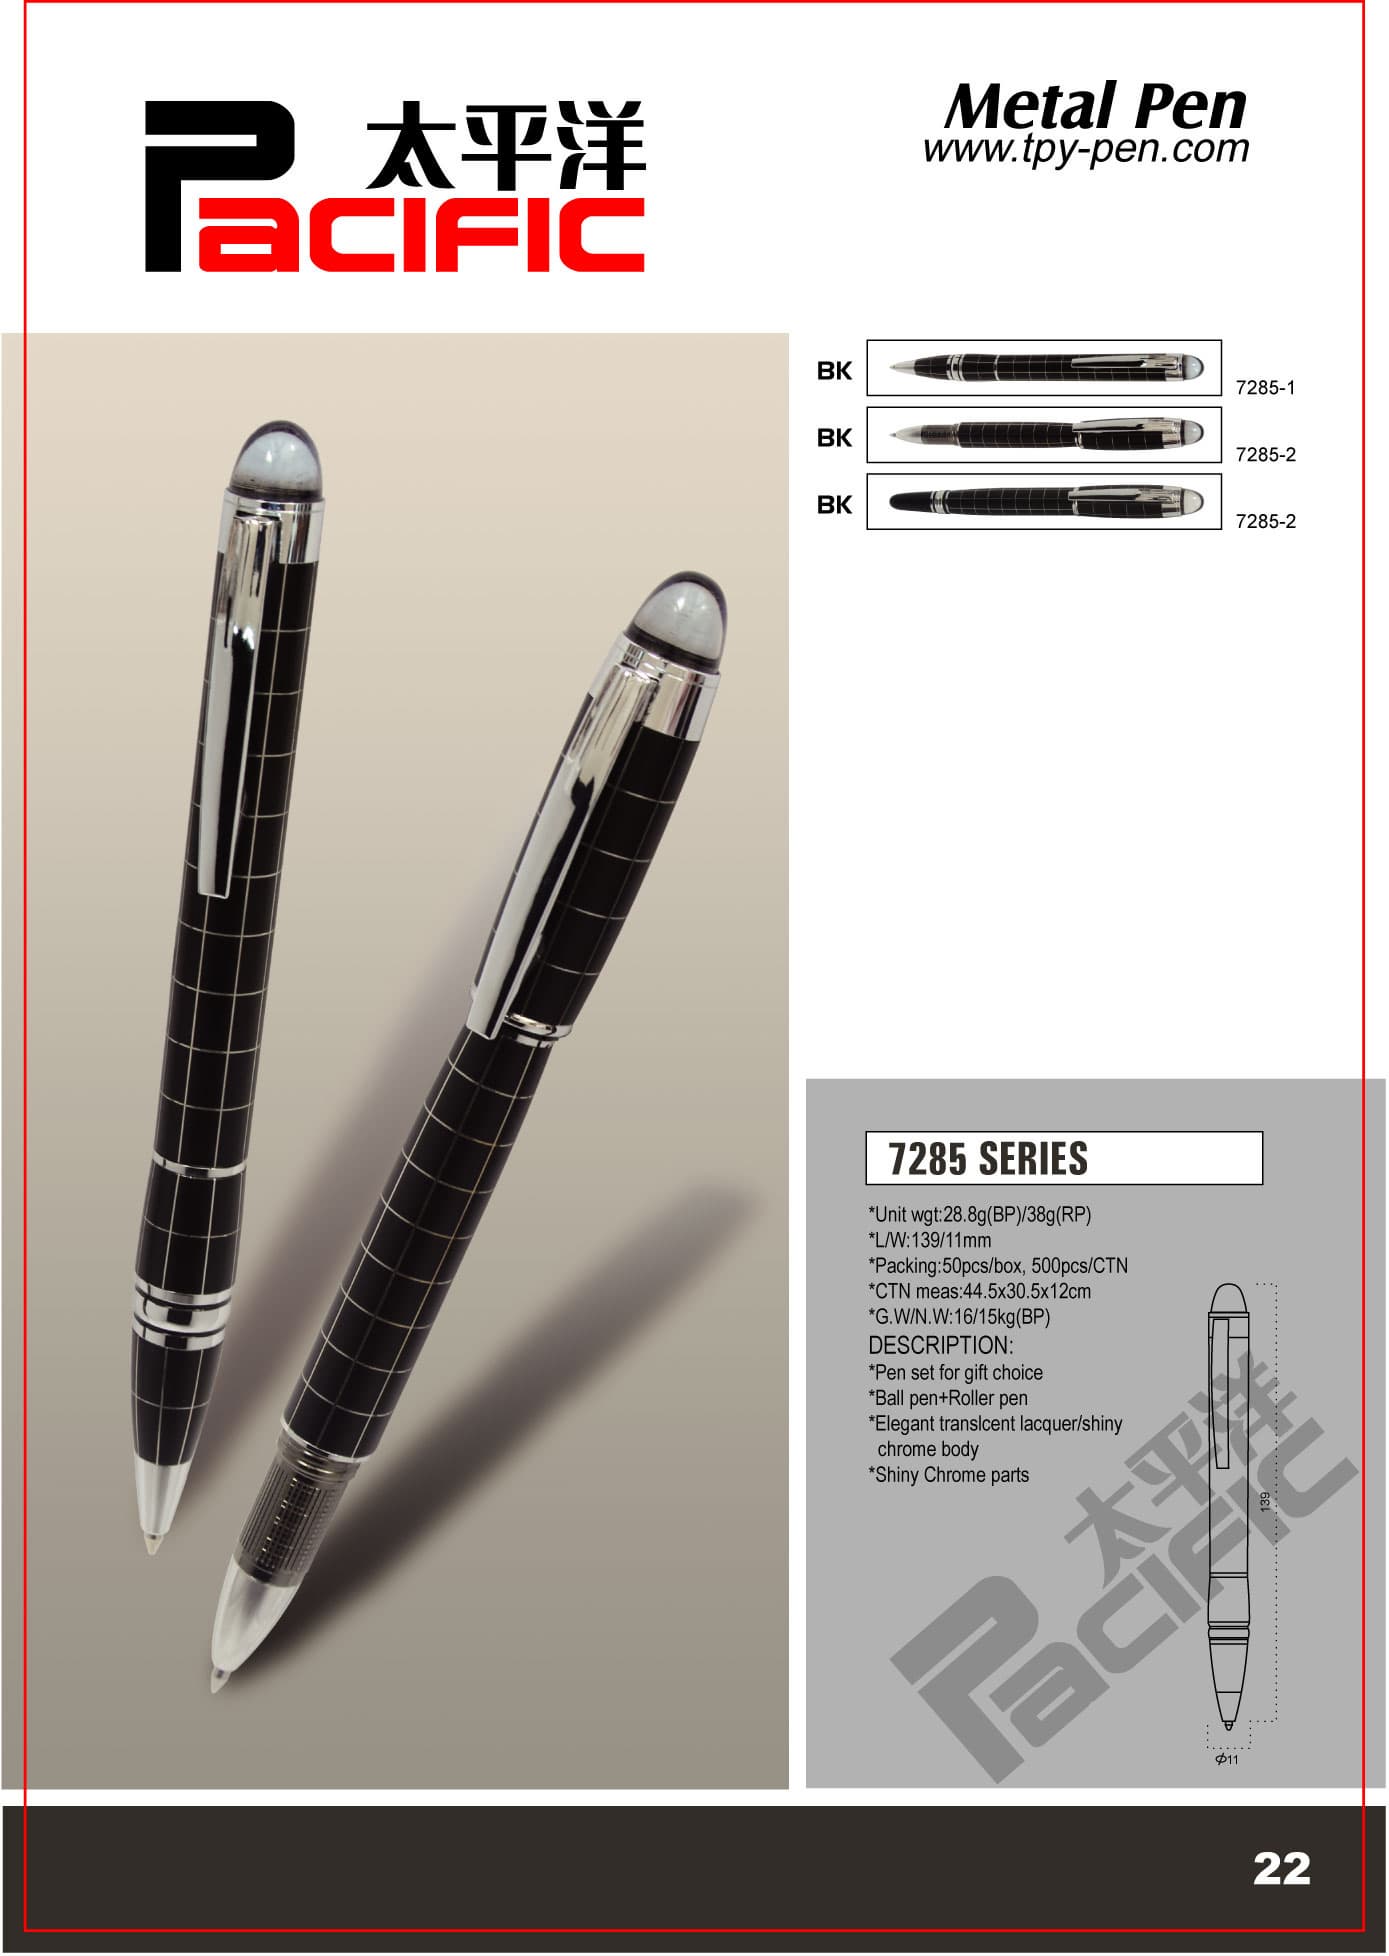 metal pen,fountain pen,ball pen,roller pen,pen set,pen item,writing instrument,gift pen7285 series